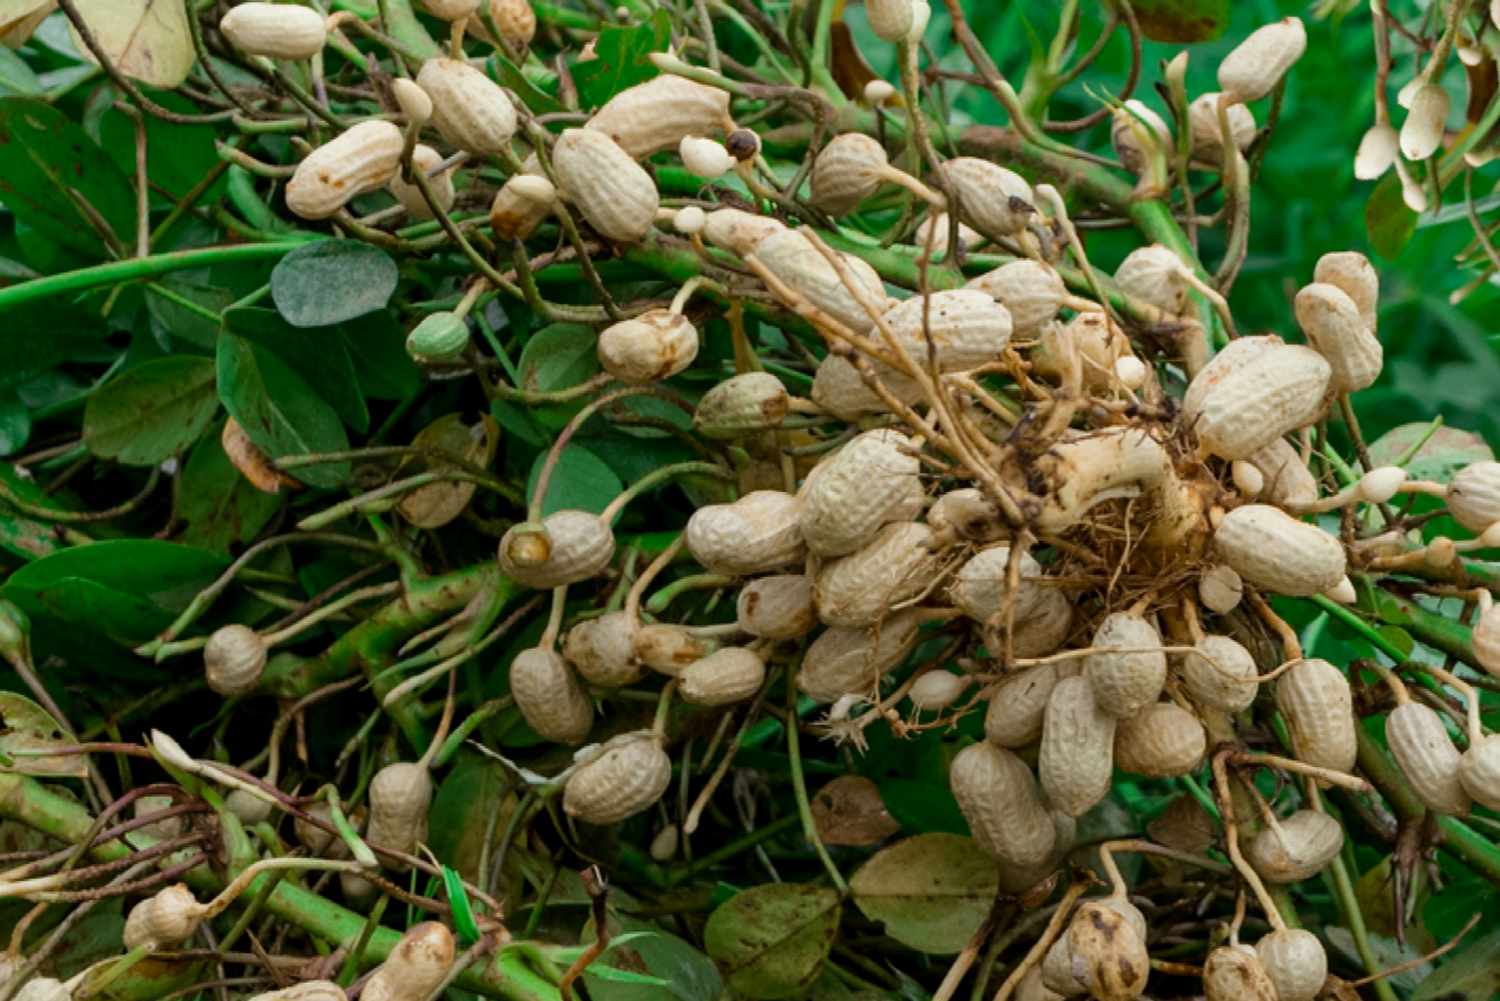 Harvest the peanuts